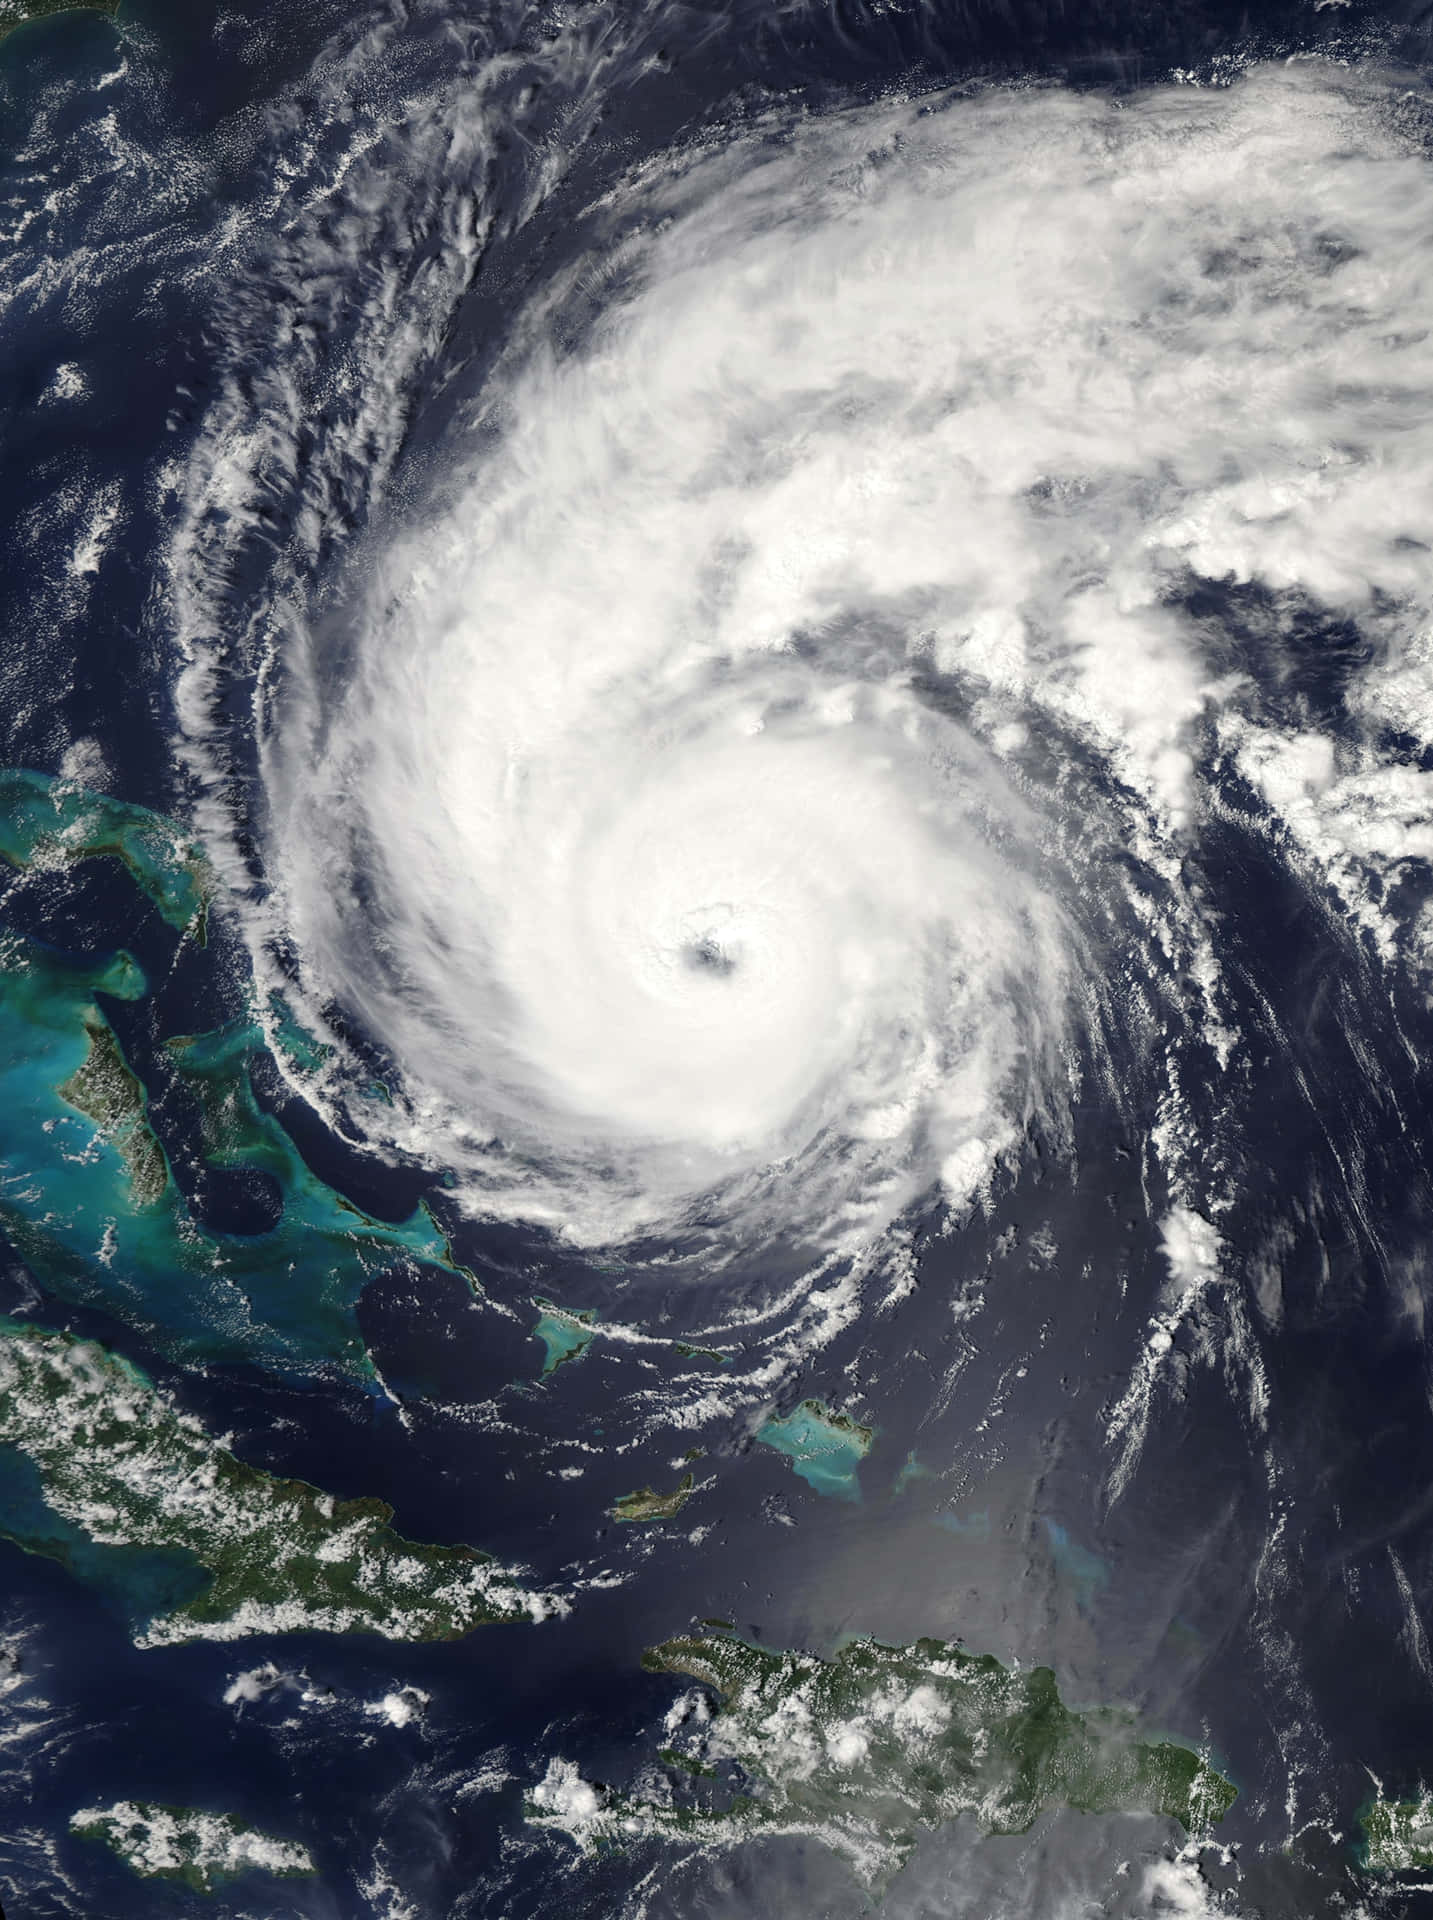 Destructive hurricane with devastation in its wake